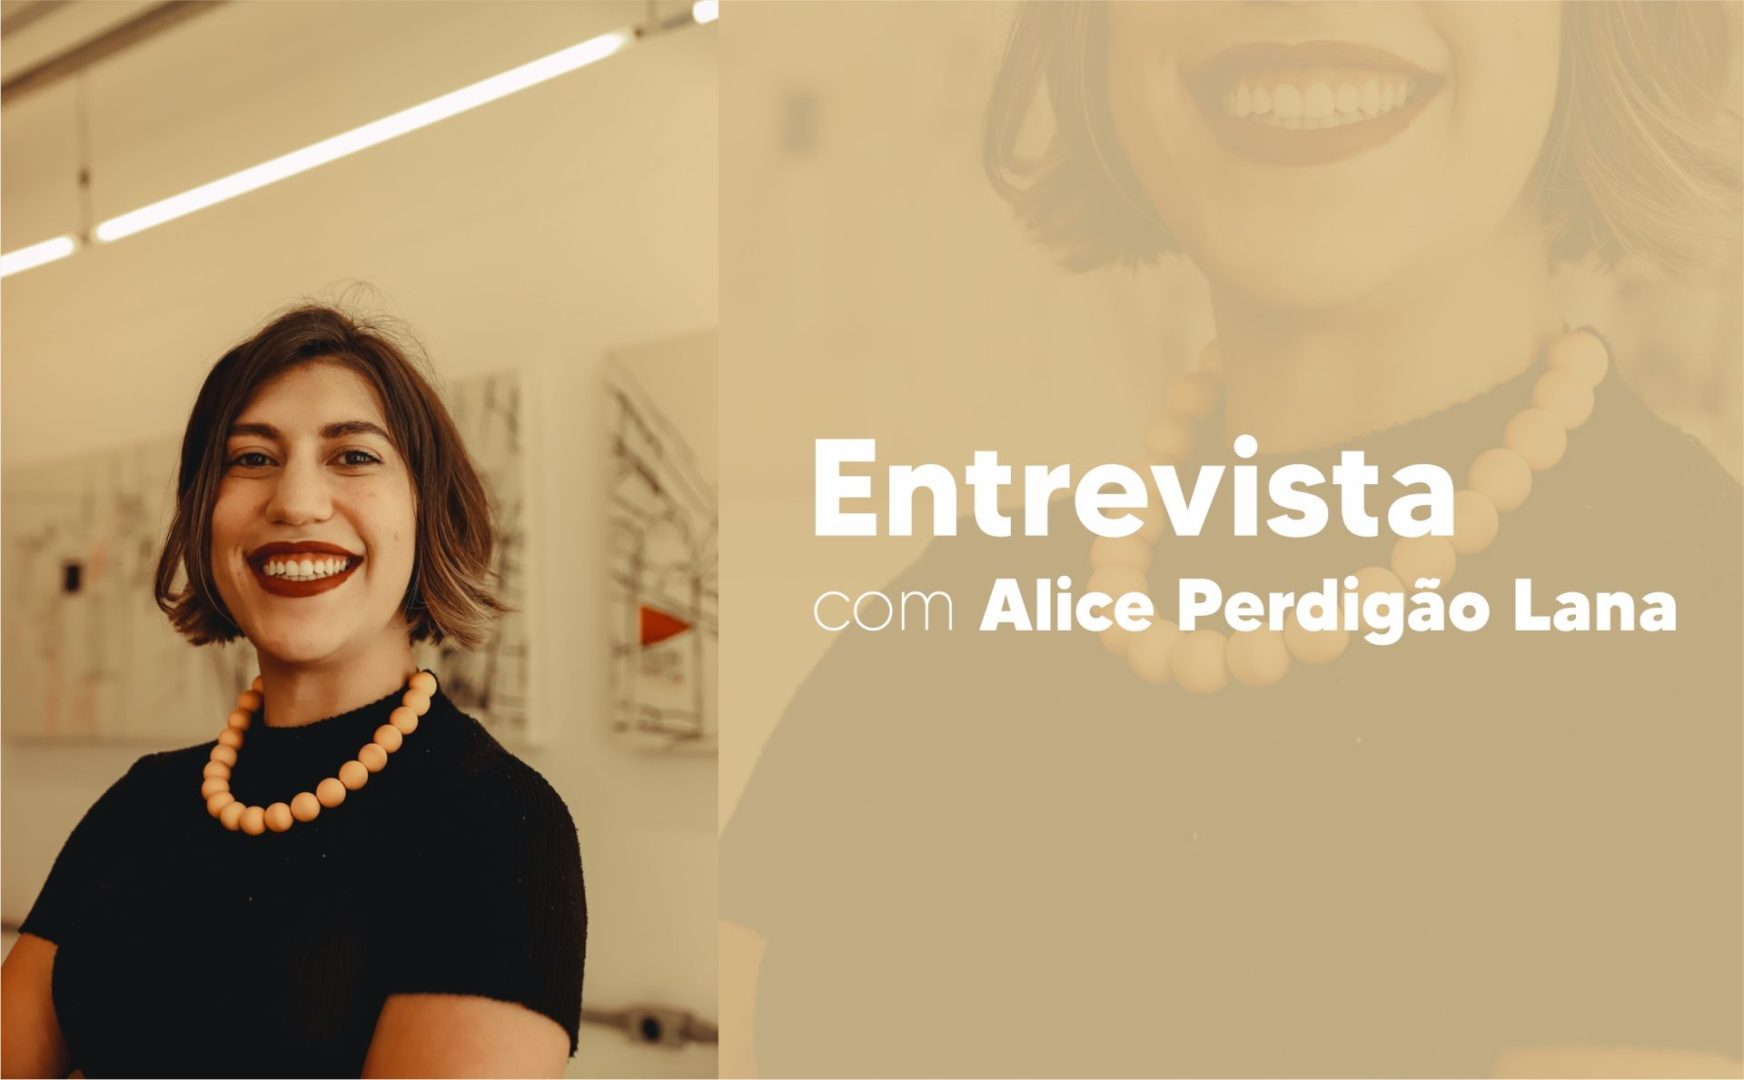 Entrevista com Alice Perdigão Lana